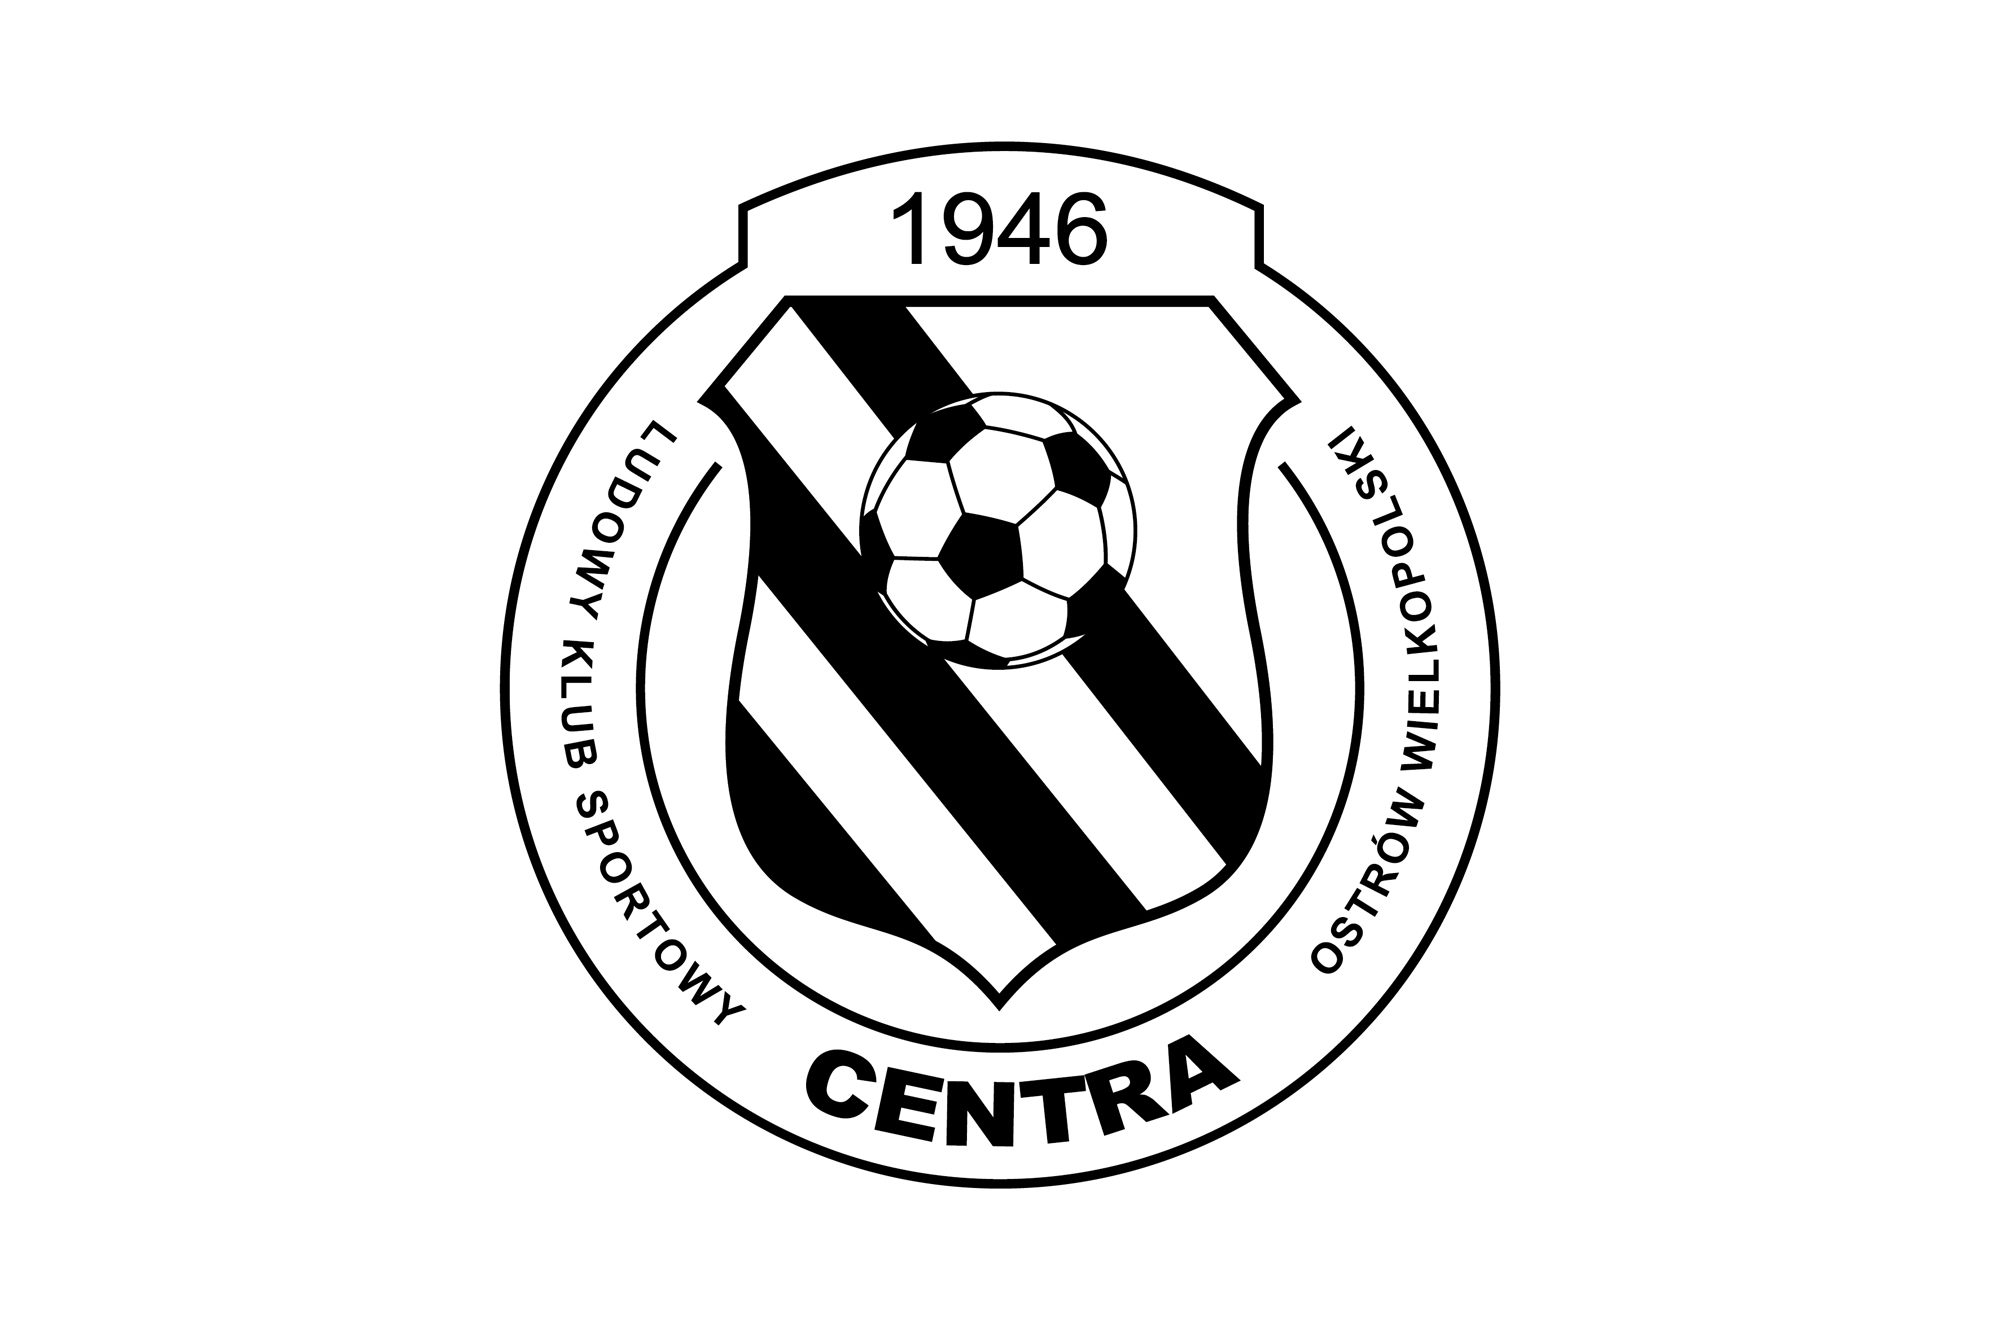 Centra Ostrów - logo PLANSZA 30x30cm EDYCJA